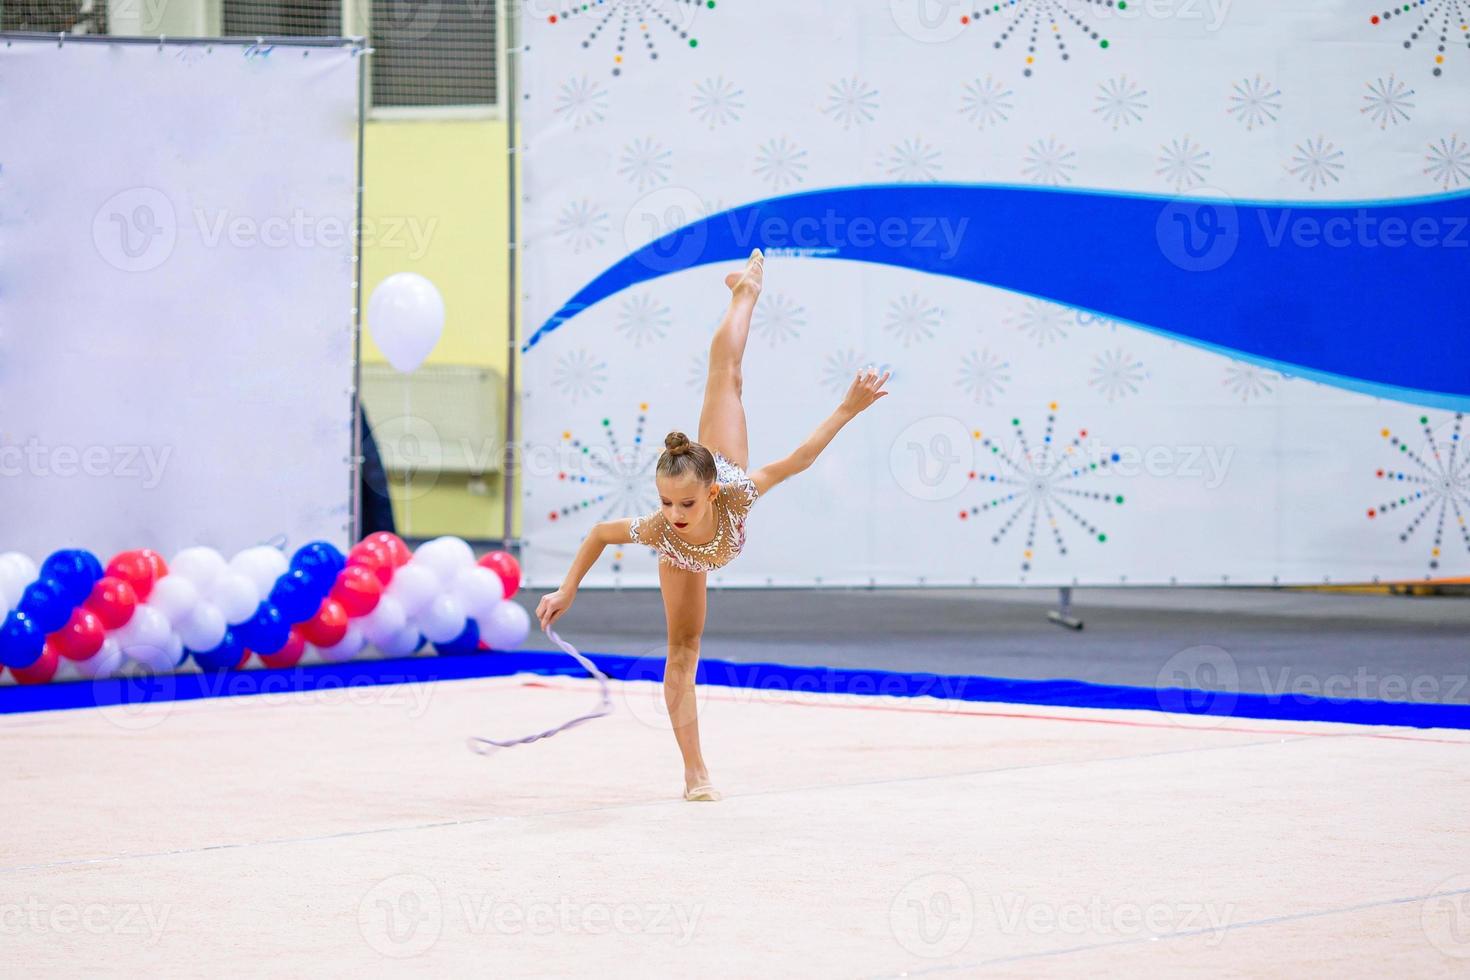 skön liten aktiva gymnast flicka med henne prestanda på de matta foto